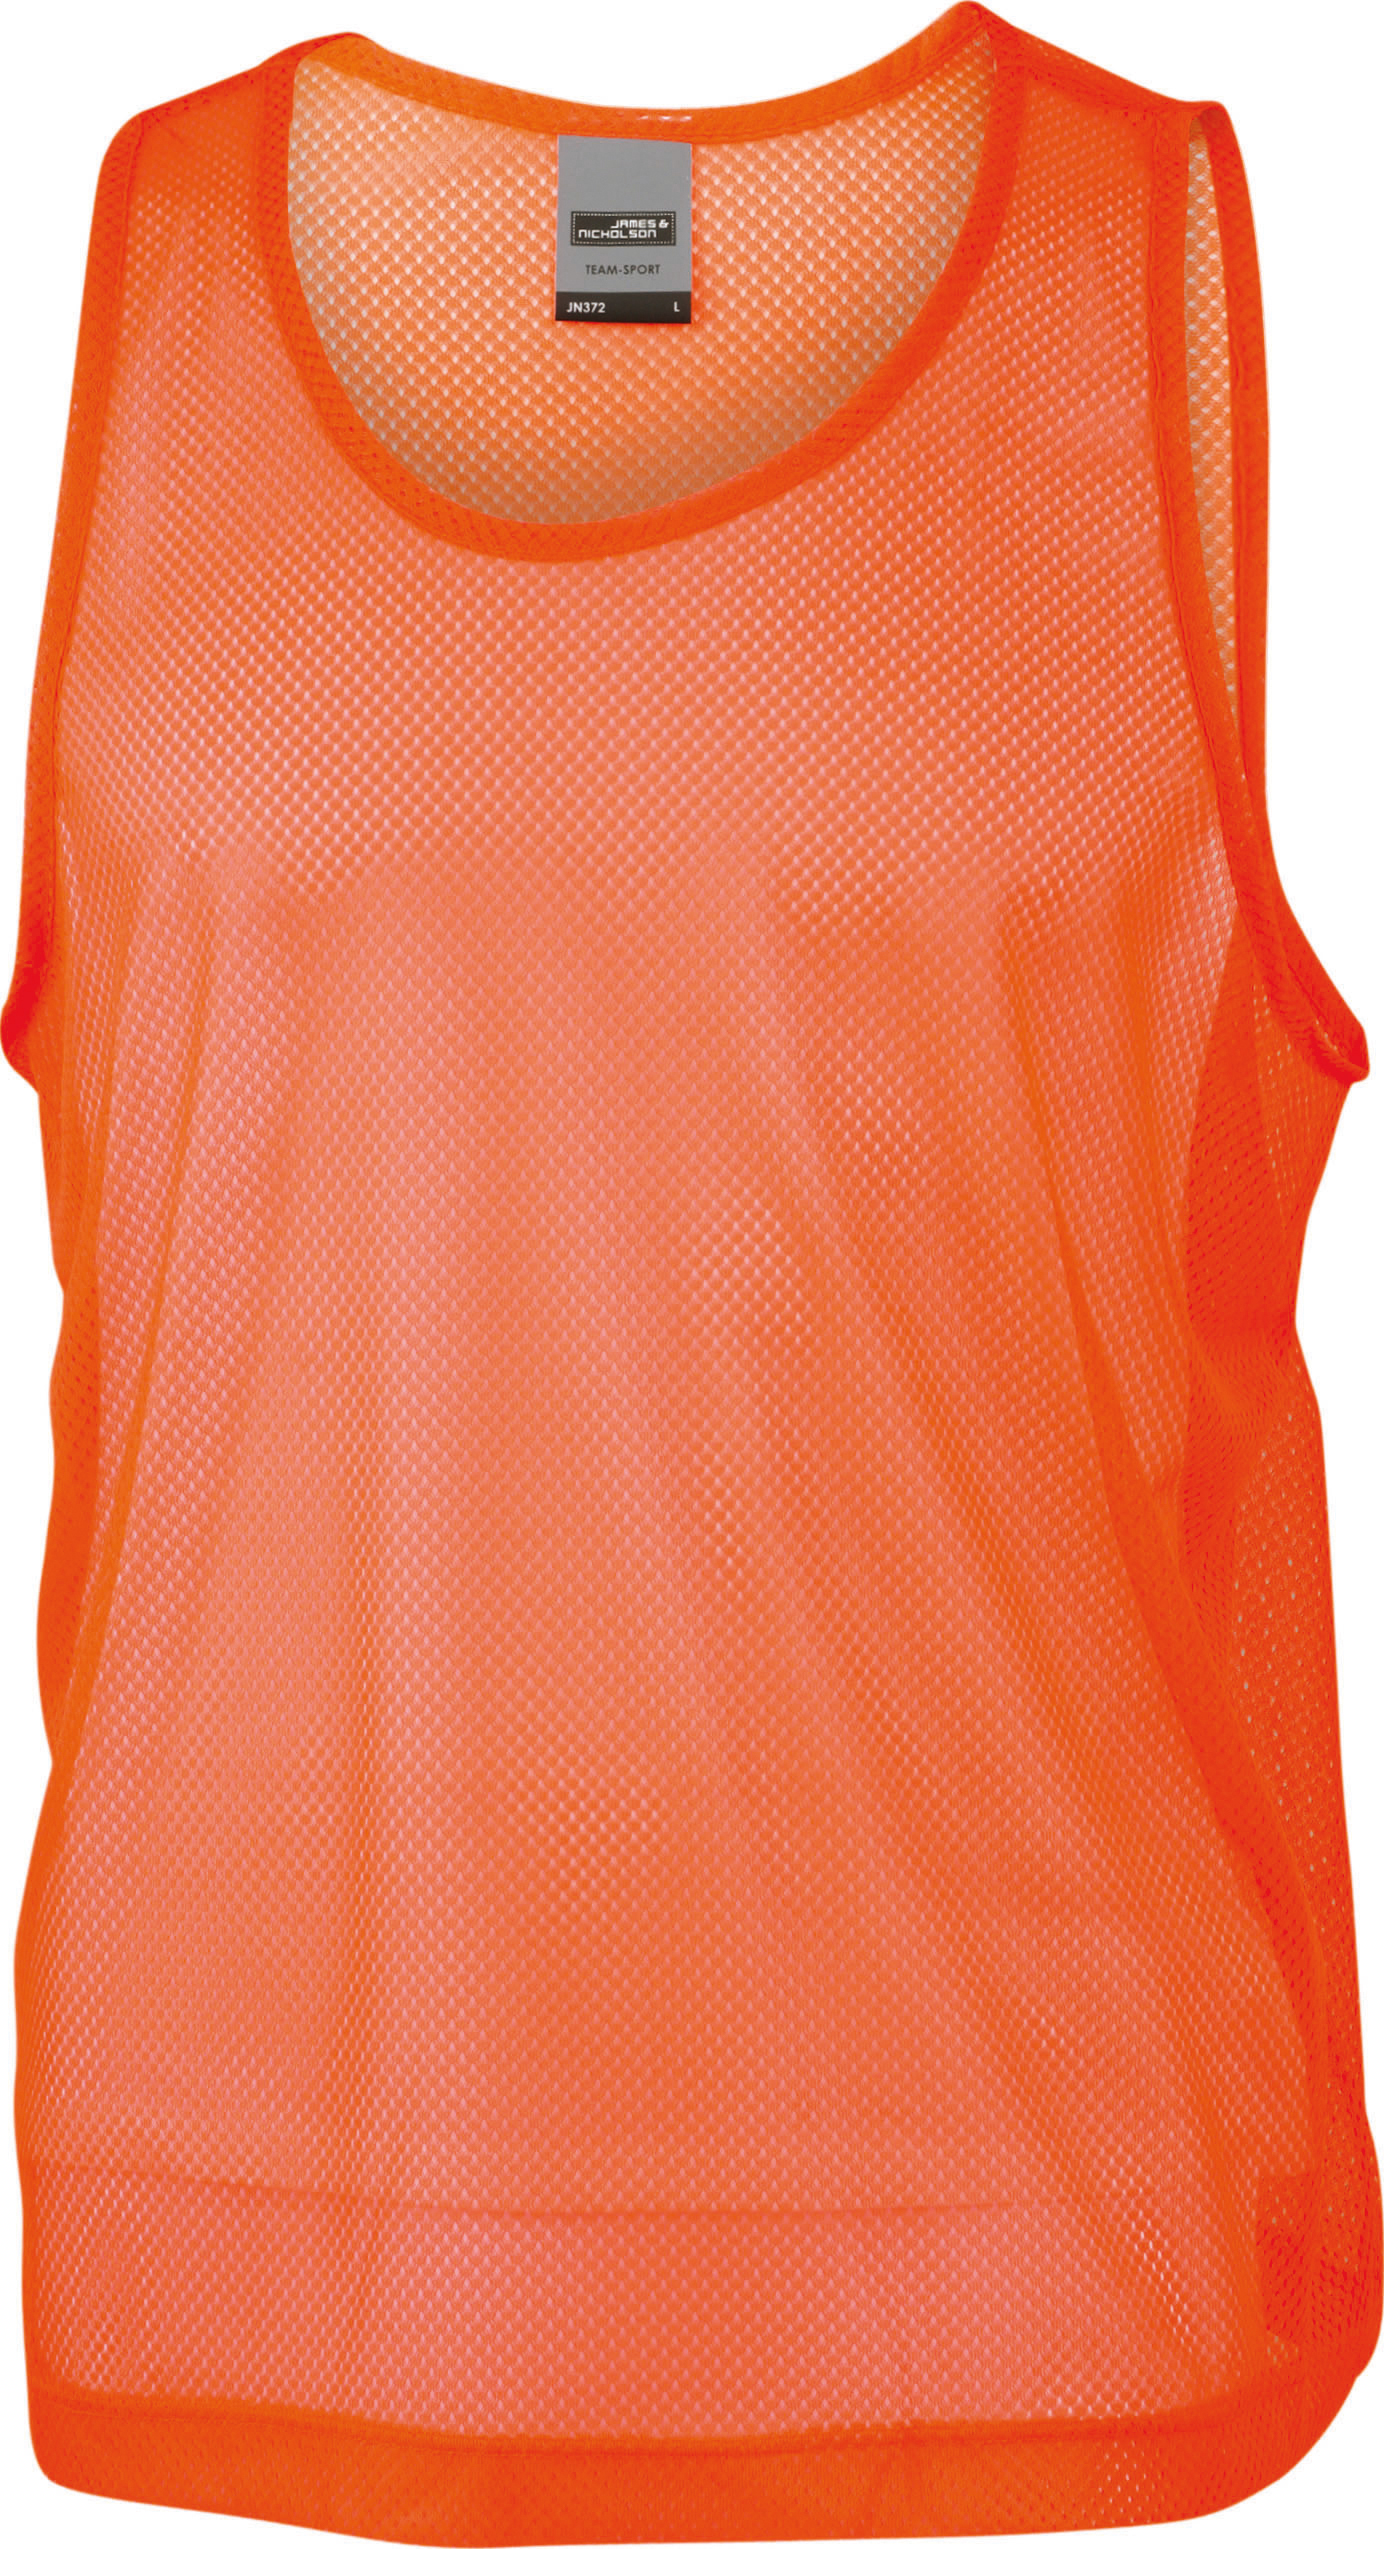 Týmový rozlišovací dres JN 372 Barva: oranžová, Velikost: L